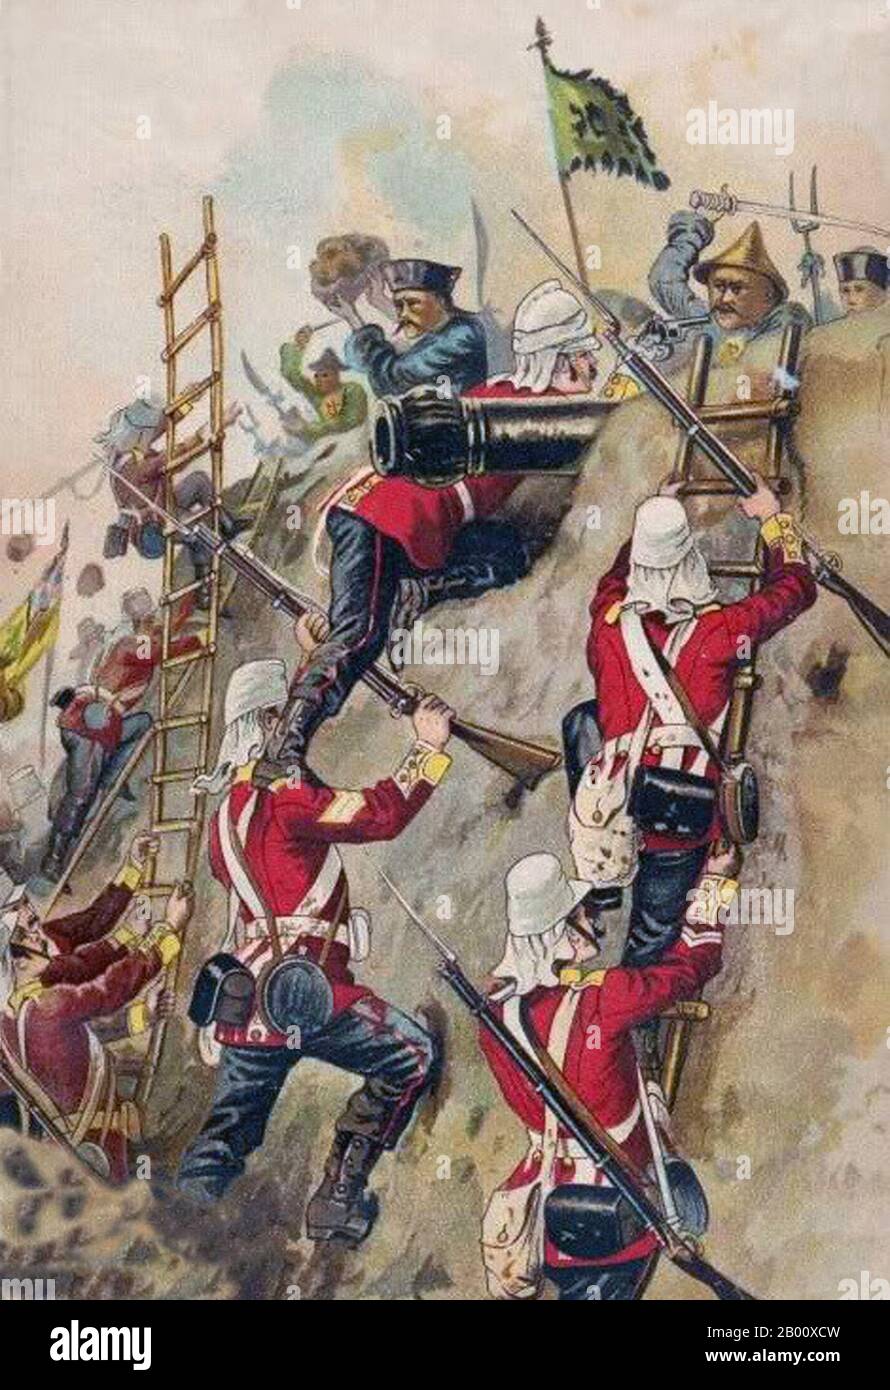 Cina/Regno Unito: La seconda guerra dell'Opium - i britannici 67a piedi prendendo un forte nel 1860. Il sessantasettesimo reggimento di piede (South Hampshire) fu un reggimento di fanteria dell'esercito britannico, formato nel 1758 e amalgamato nel reggimento dell'Hampshire nel 1881. La seconda guerra dell'Opium, la seconda guerra anglo-cinese, la seconda guerra della Cina, la guerra della freccia, o la spedizione anglo-francese in Cina, fu una guerra che vessò l'Impero britannico e il secondo impero francese contro la dinastia Qing della Cina, che durò dal 1856 al 1860. Foto Stock